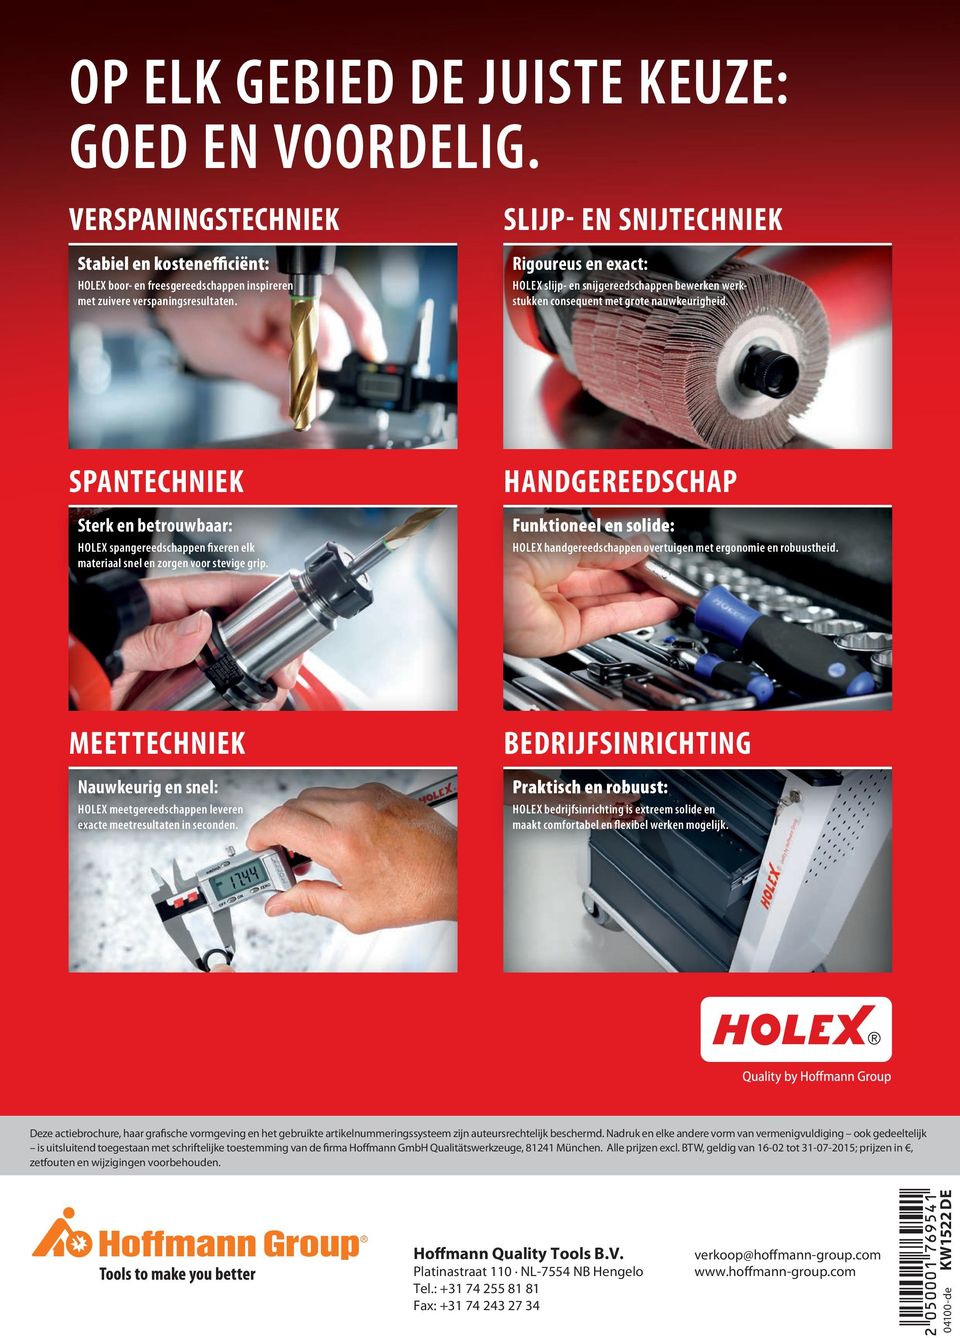 SPANTECHNIEK Sterk en betrouwbaar: HOLEX spangereedschappen fixeren elk materiaal snel en zorgen voor stevige grip.